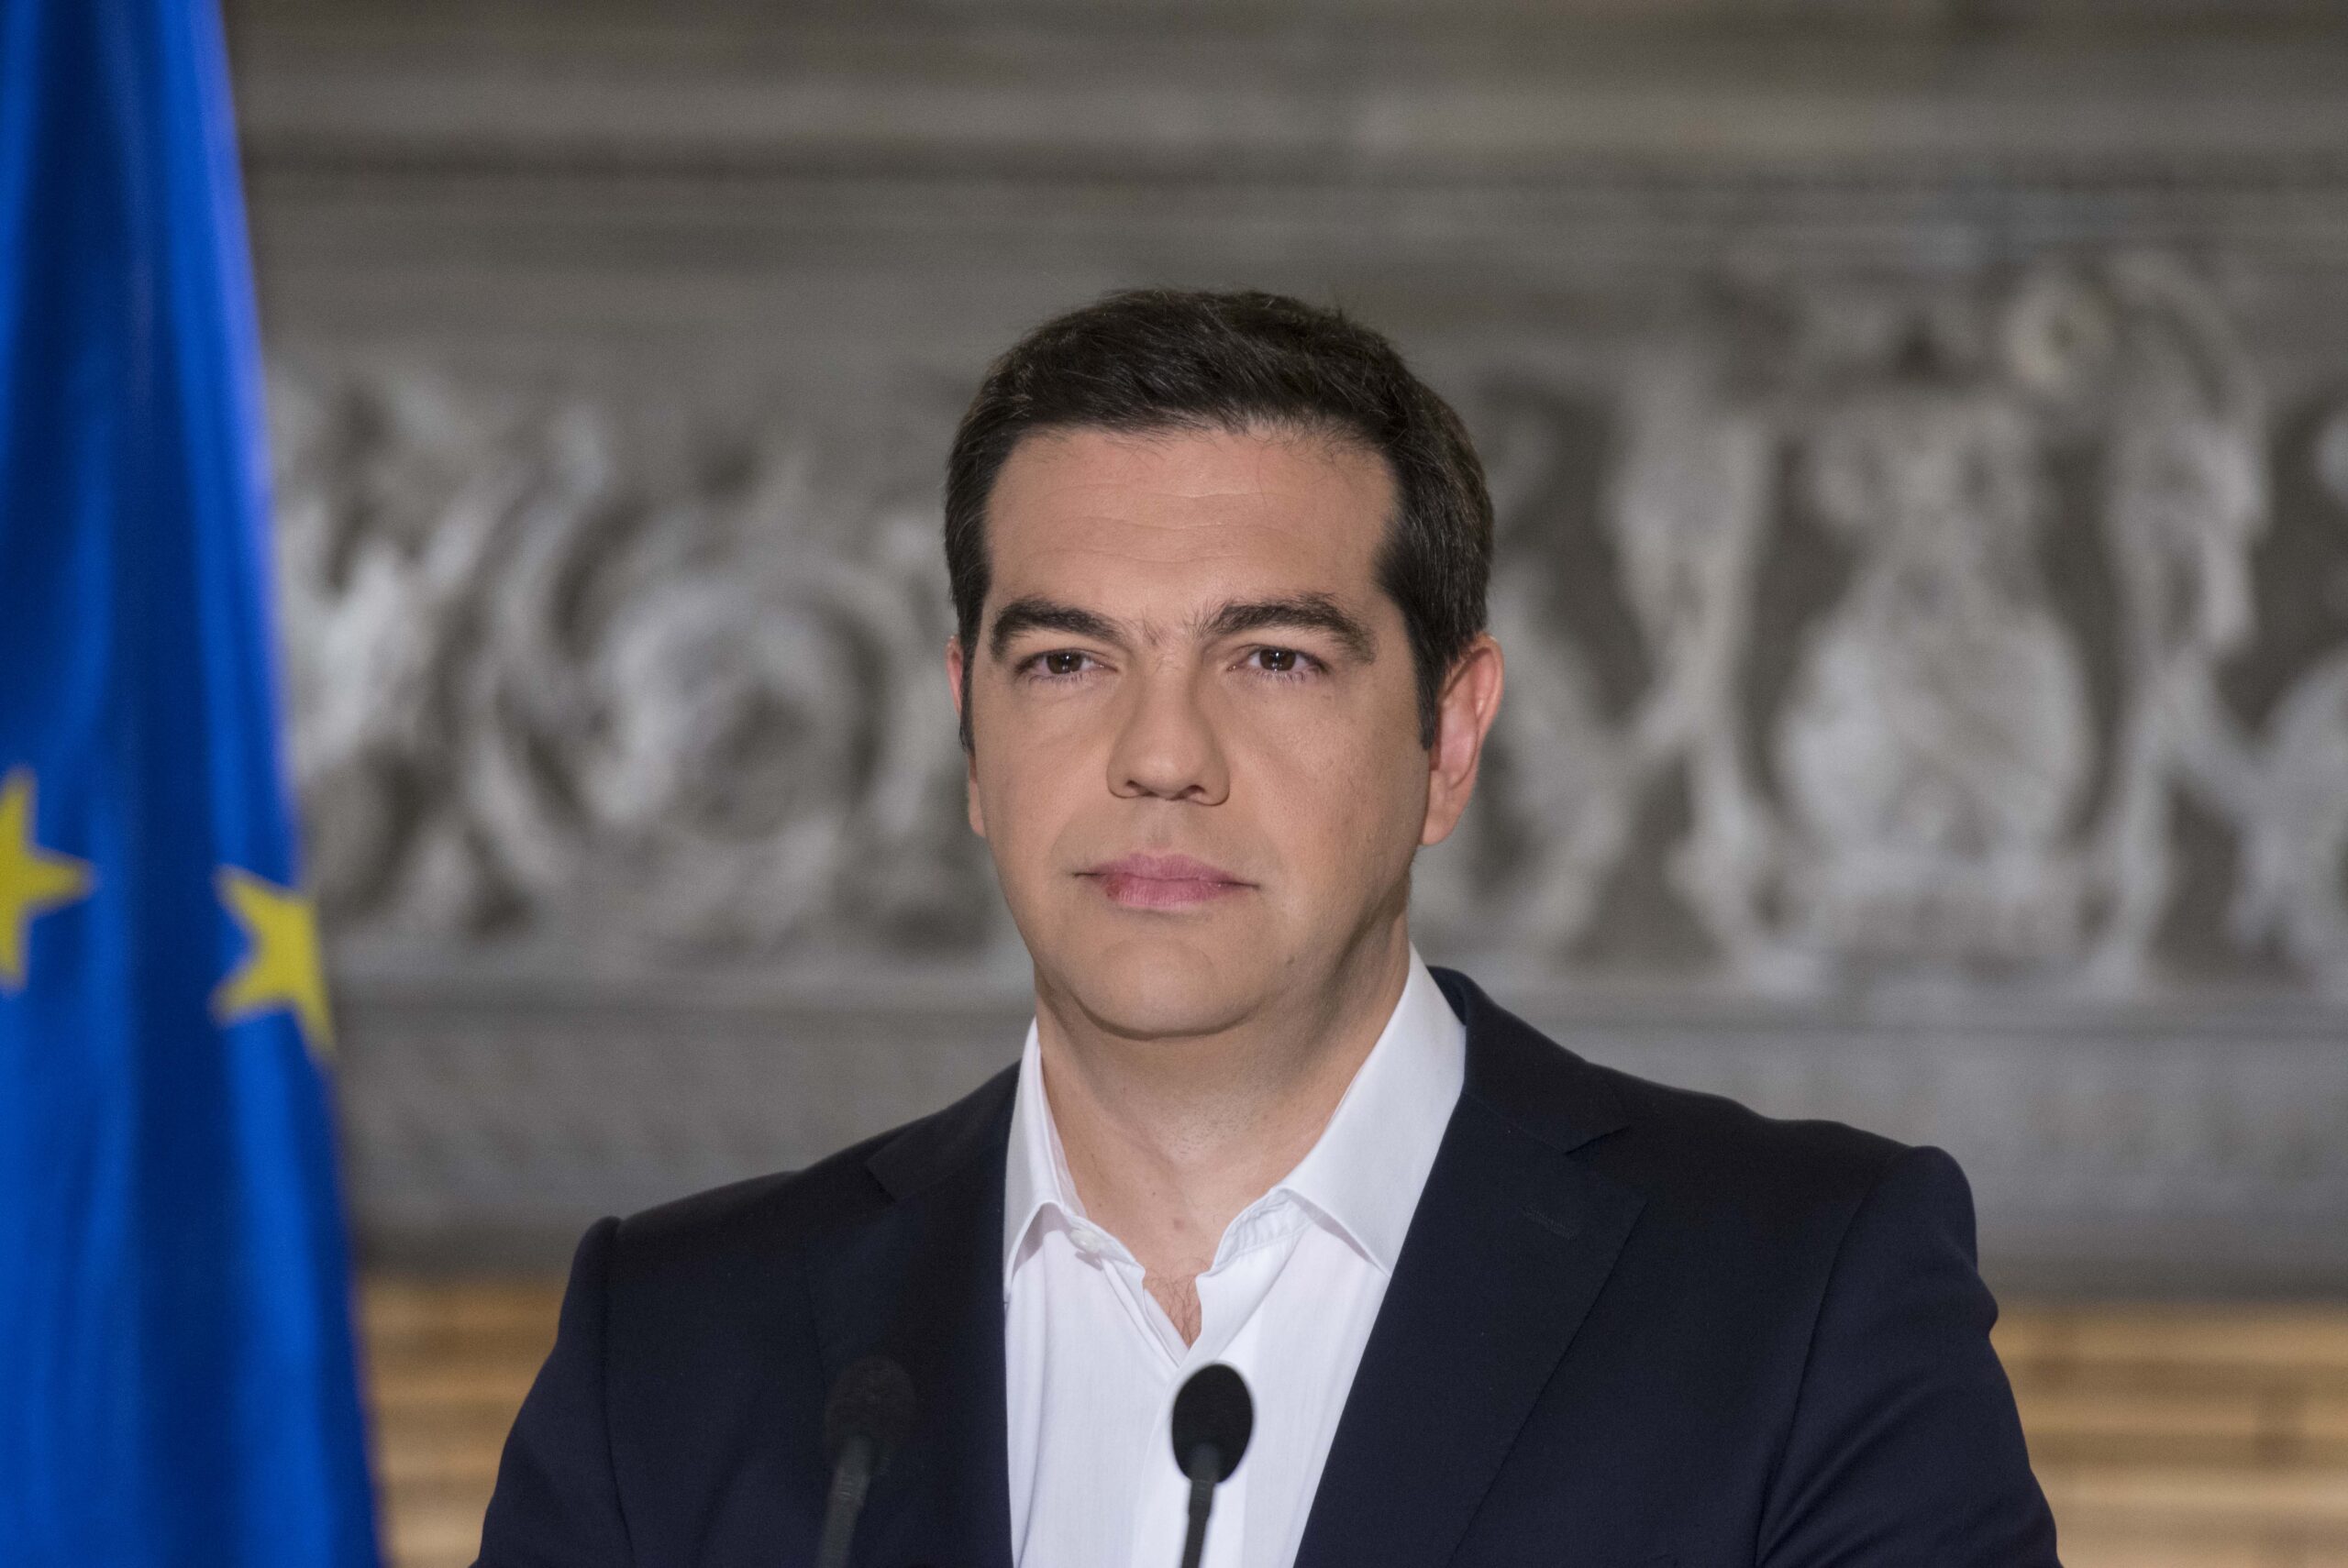 Α. Τσίπρας: Από τις μαθητικές καταλήψεις του ’90 στην ηγεσία του ΣΥΡΙΖΑ και της χώρας